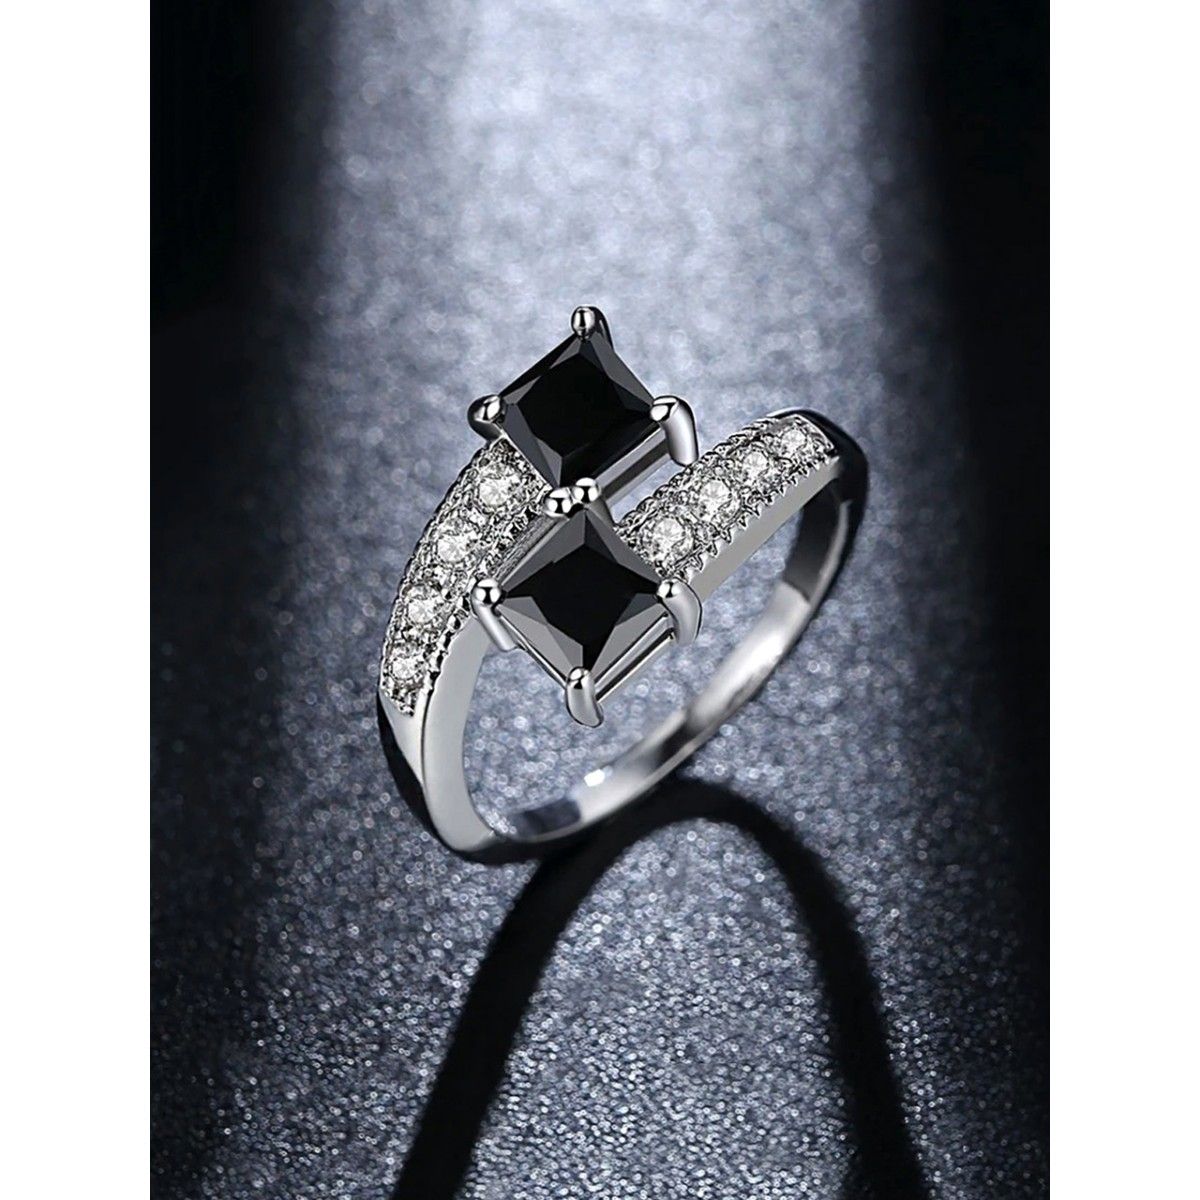 Black Onyx Ring - Premium Crystal Rings Online - Crystal Heaven